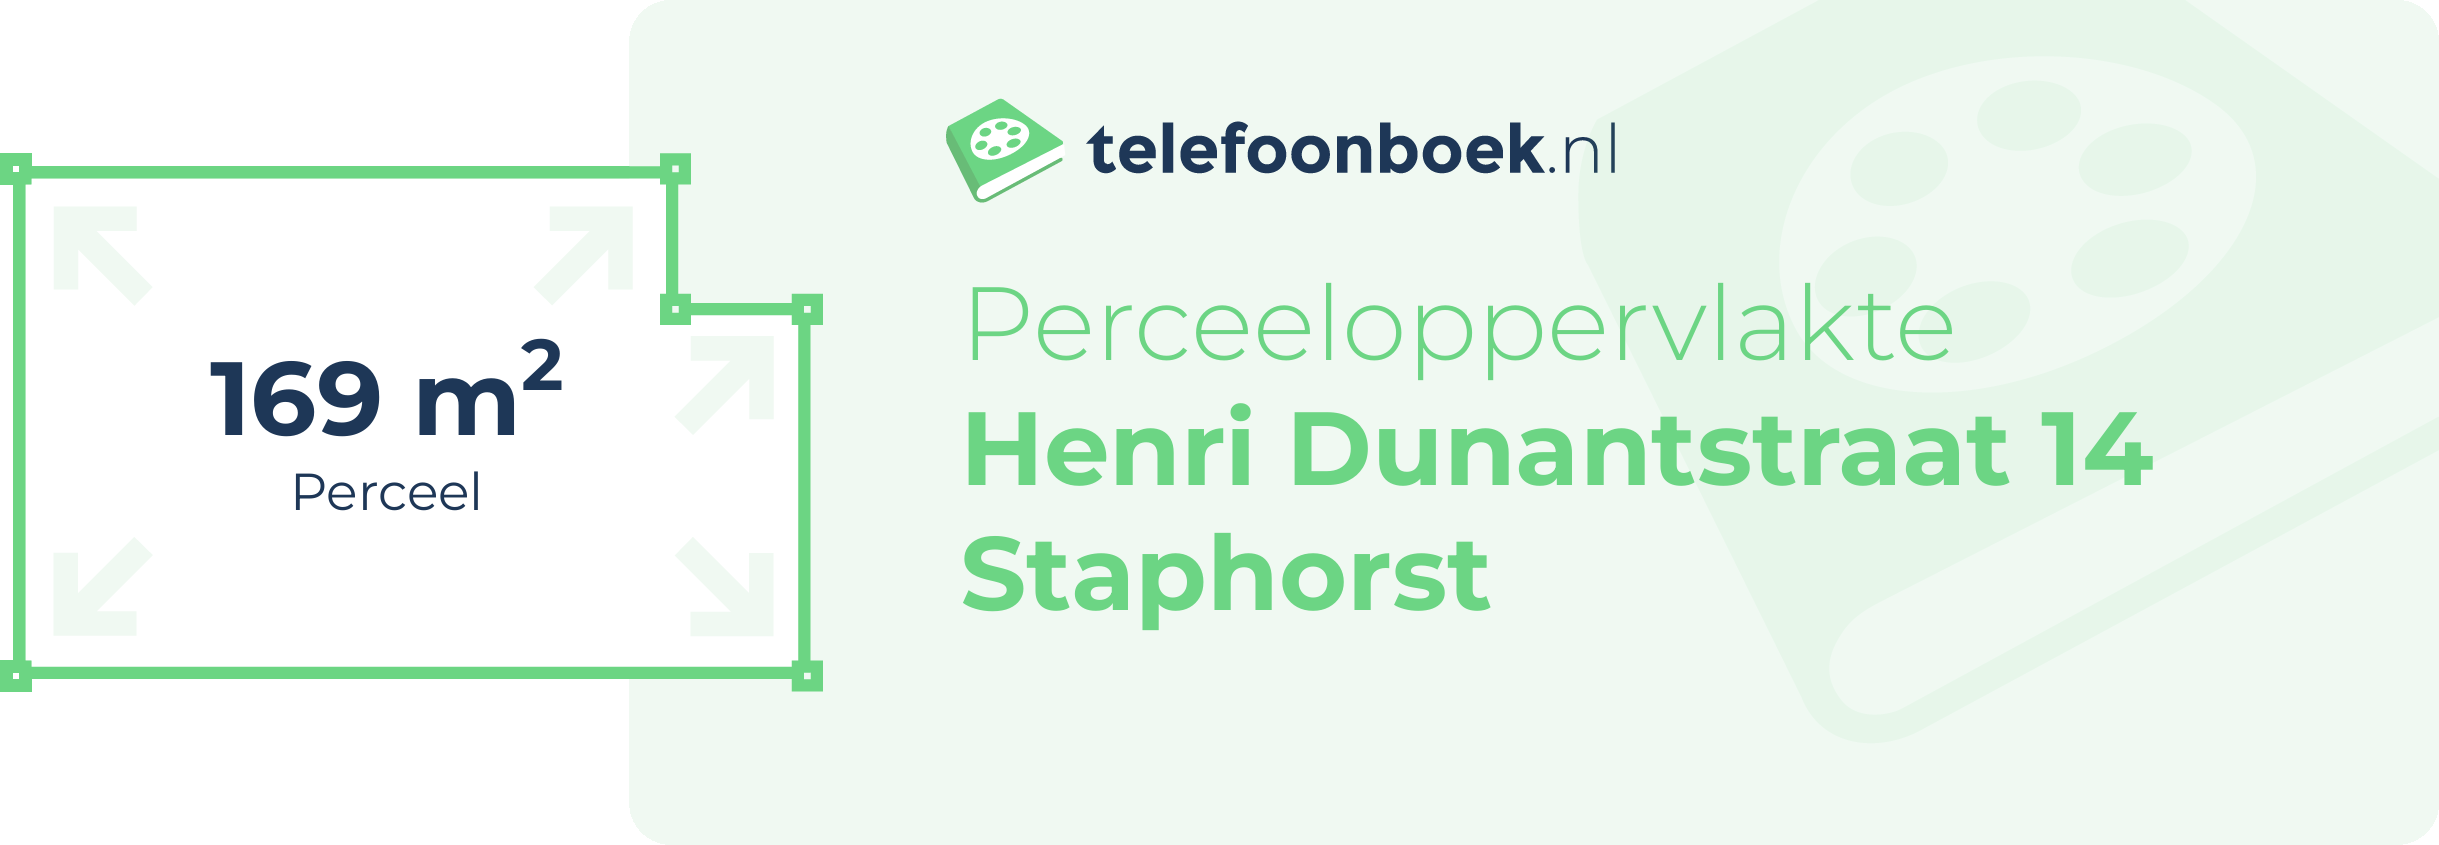 Perceeloppervlakte Henri Dunantstraat 14 Staphorst